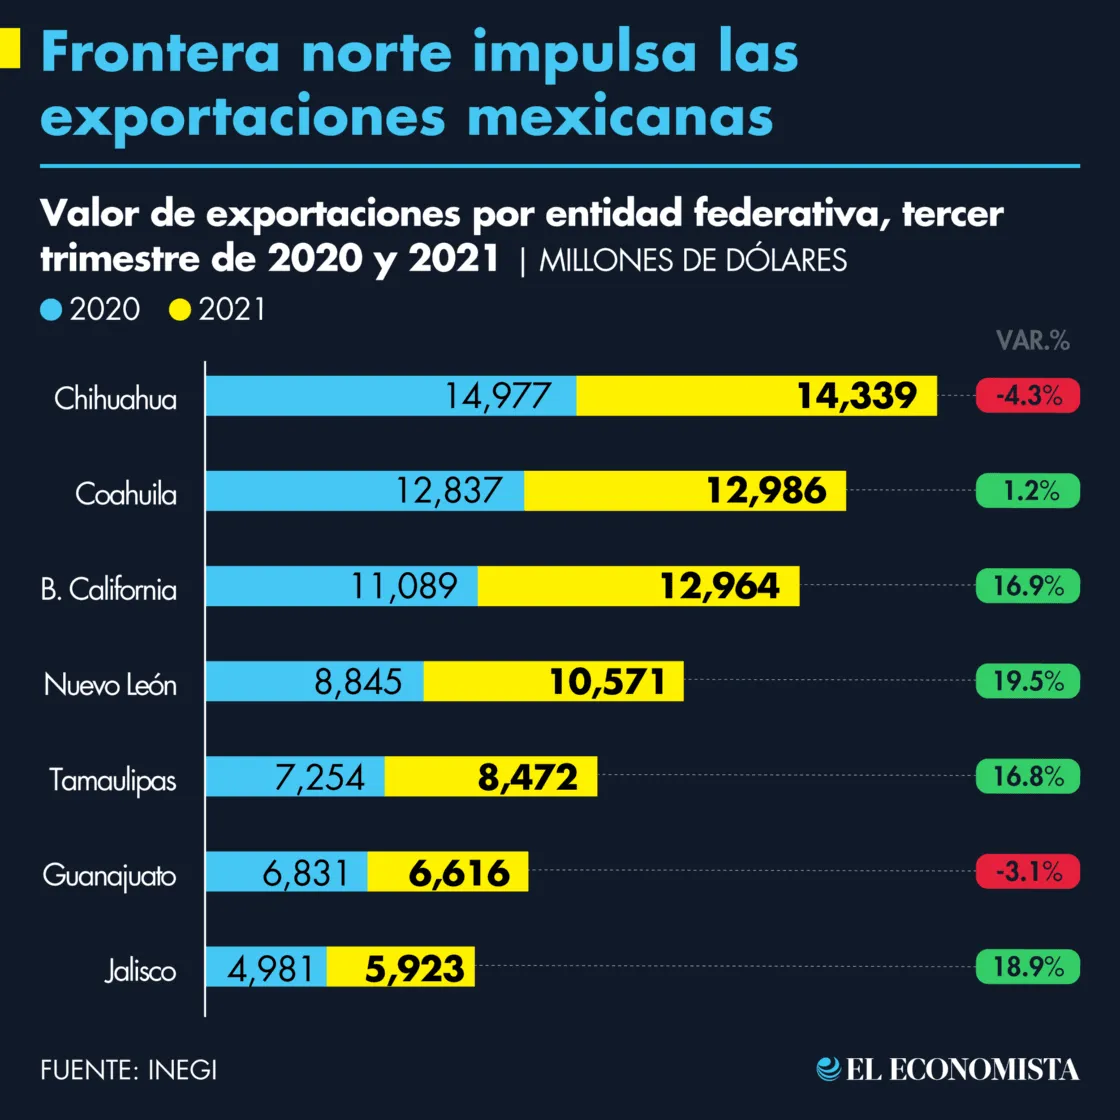 Frontera norte impulsa las exportaciones mexicanas